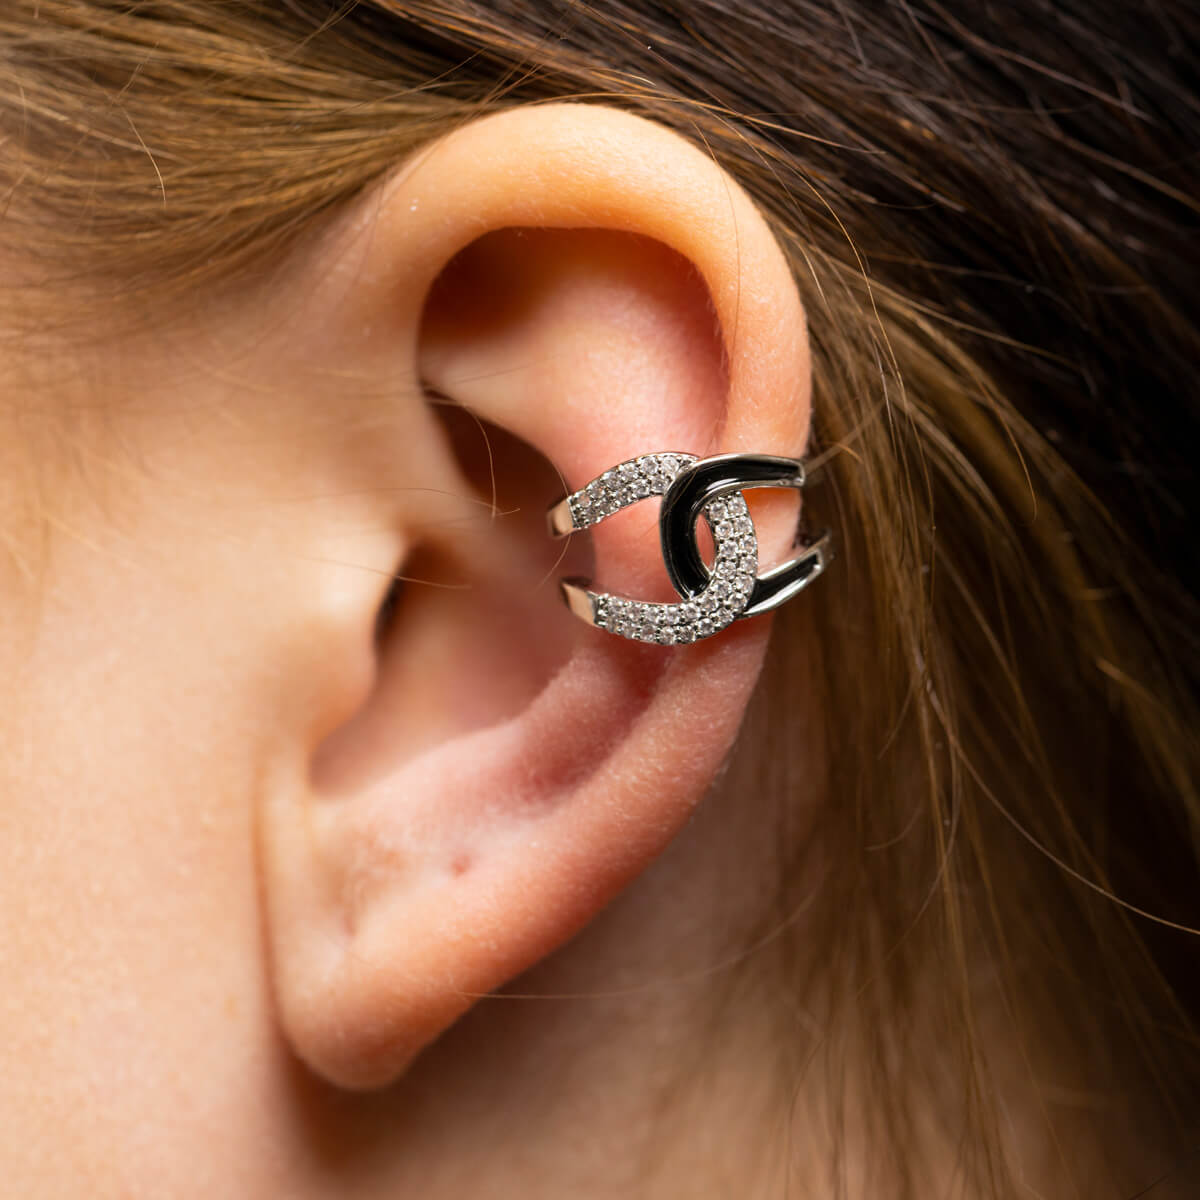 Zirconia rustic earring ear cuff 1pc